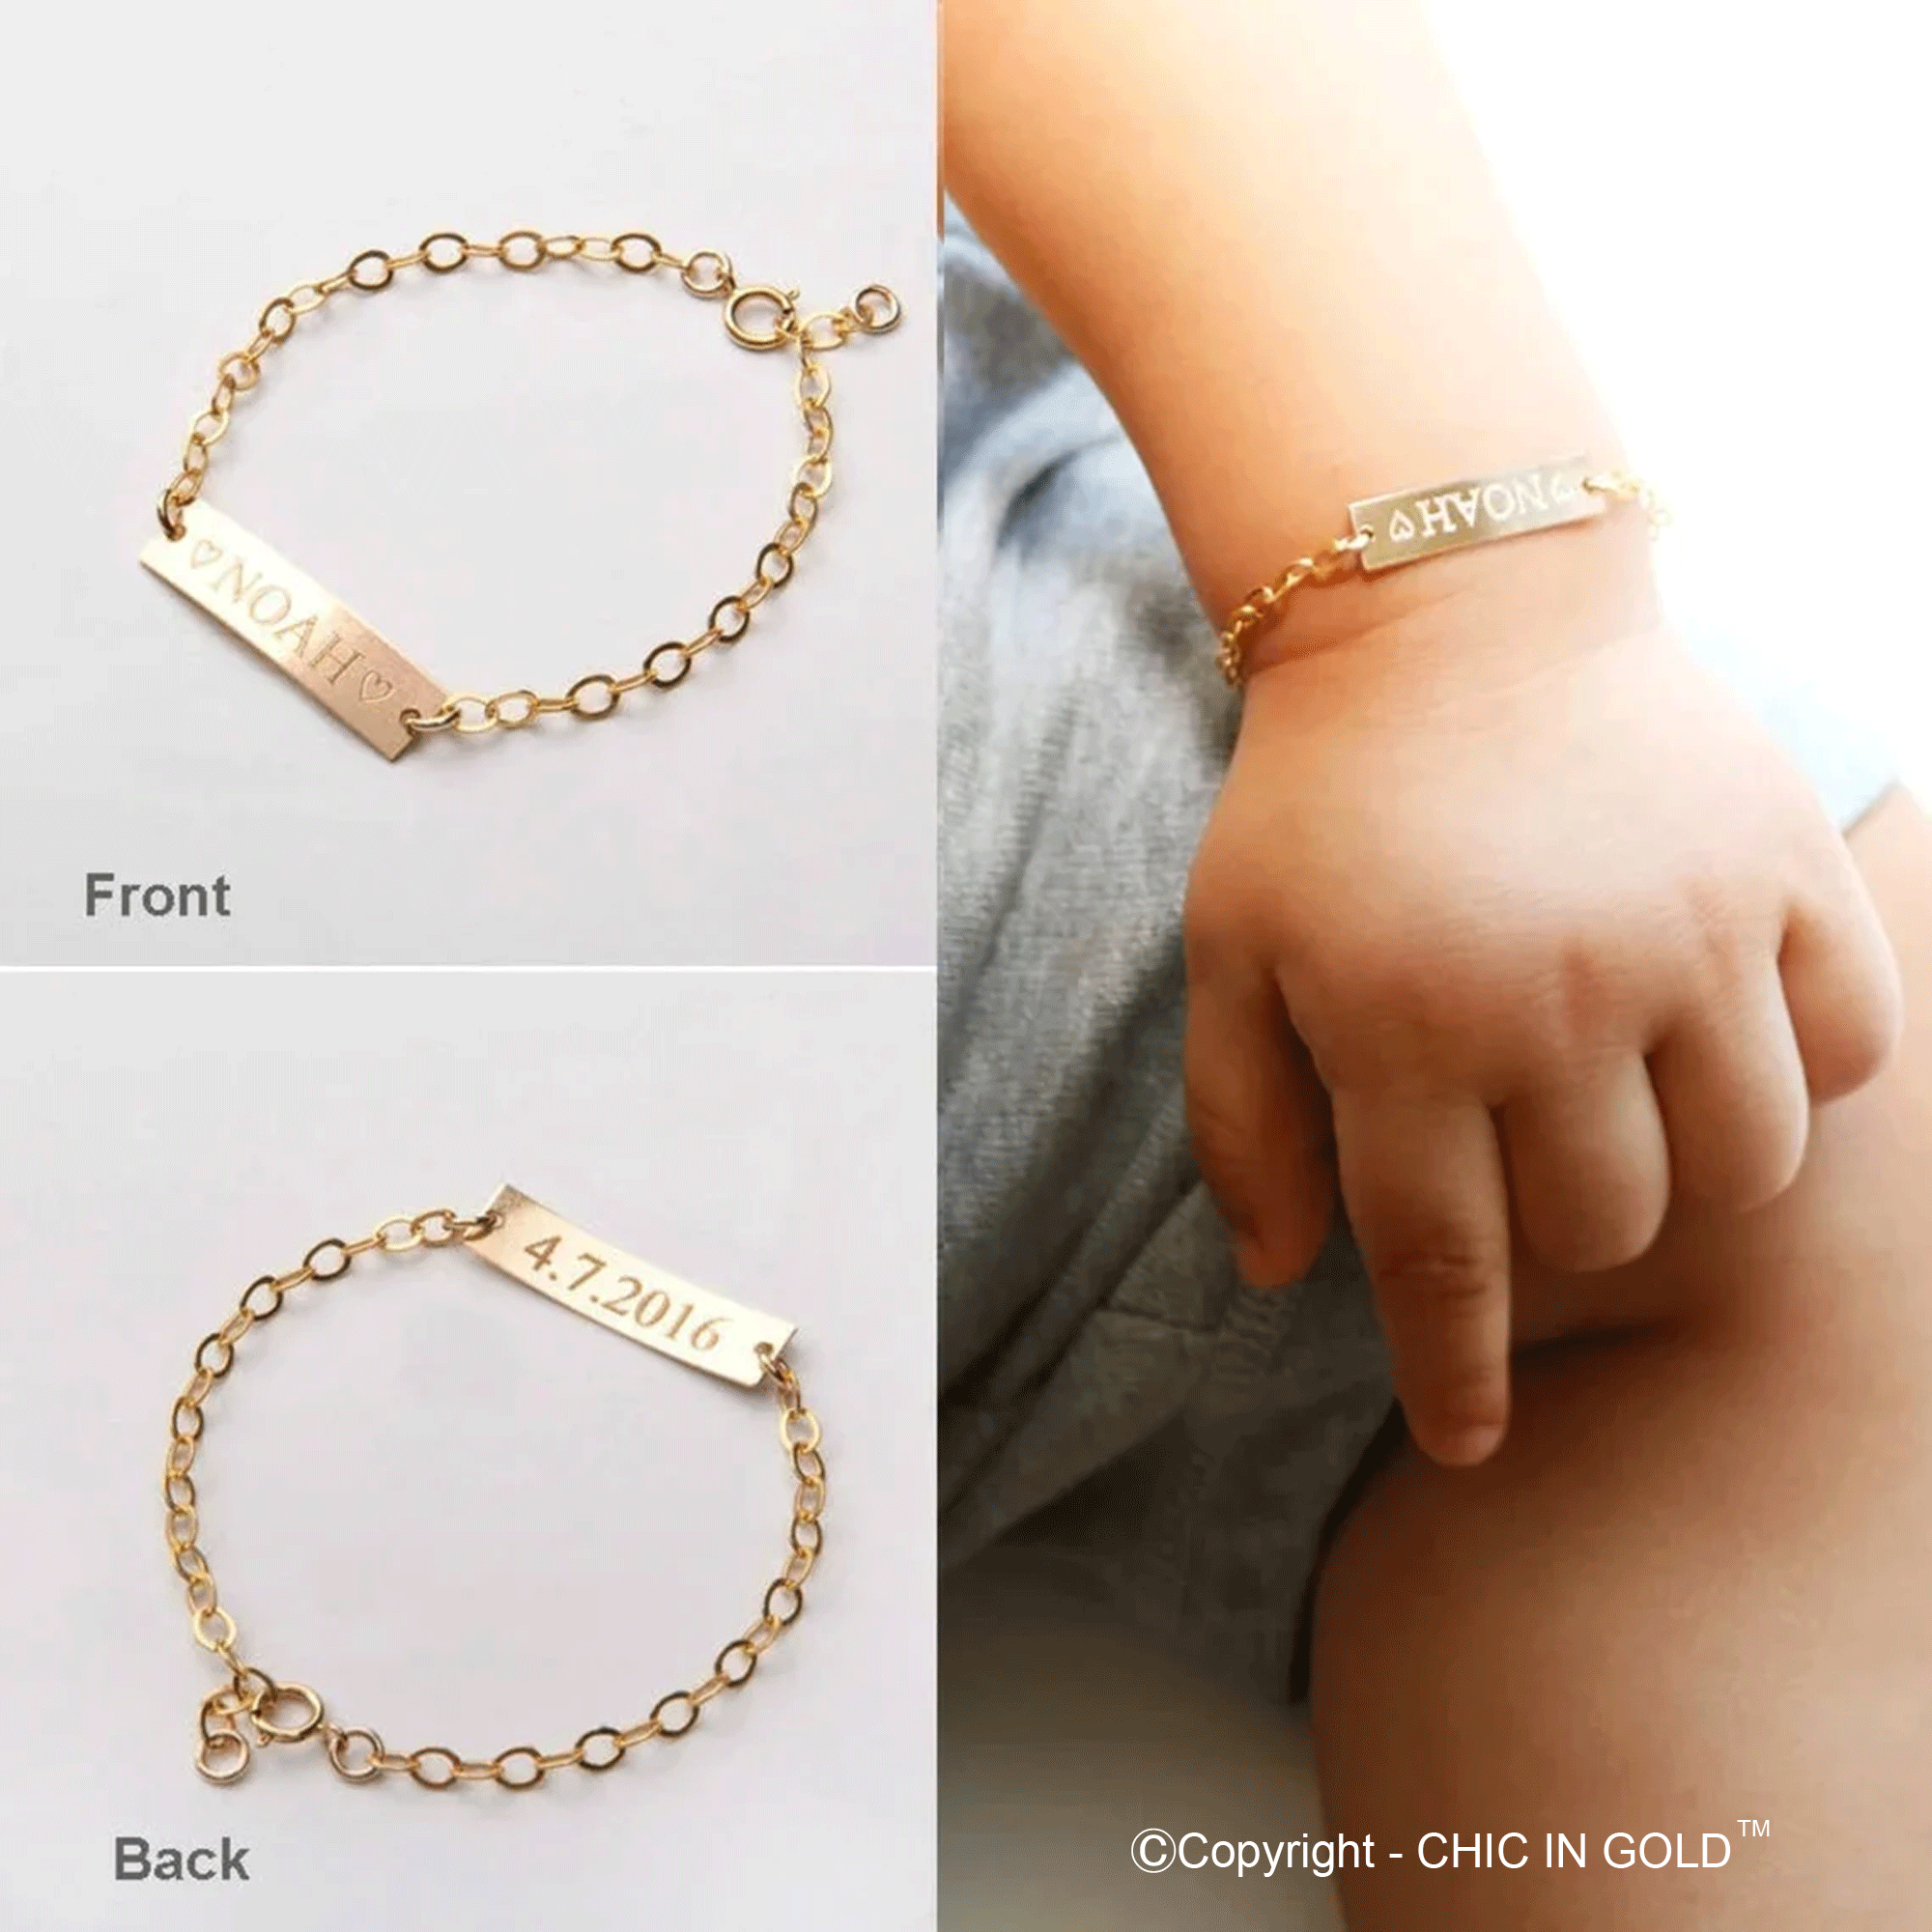 Custom Baby Bracelet Name, Baby Bracelets Gold Name